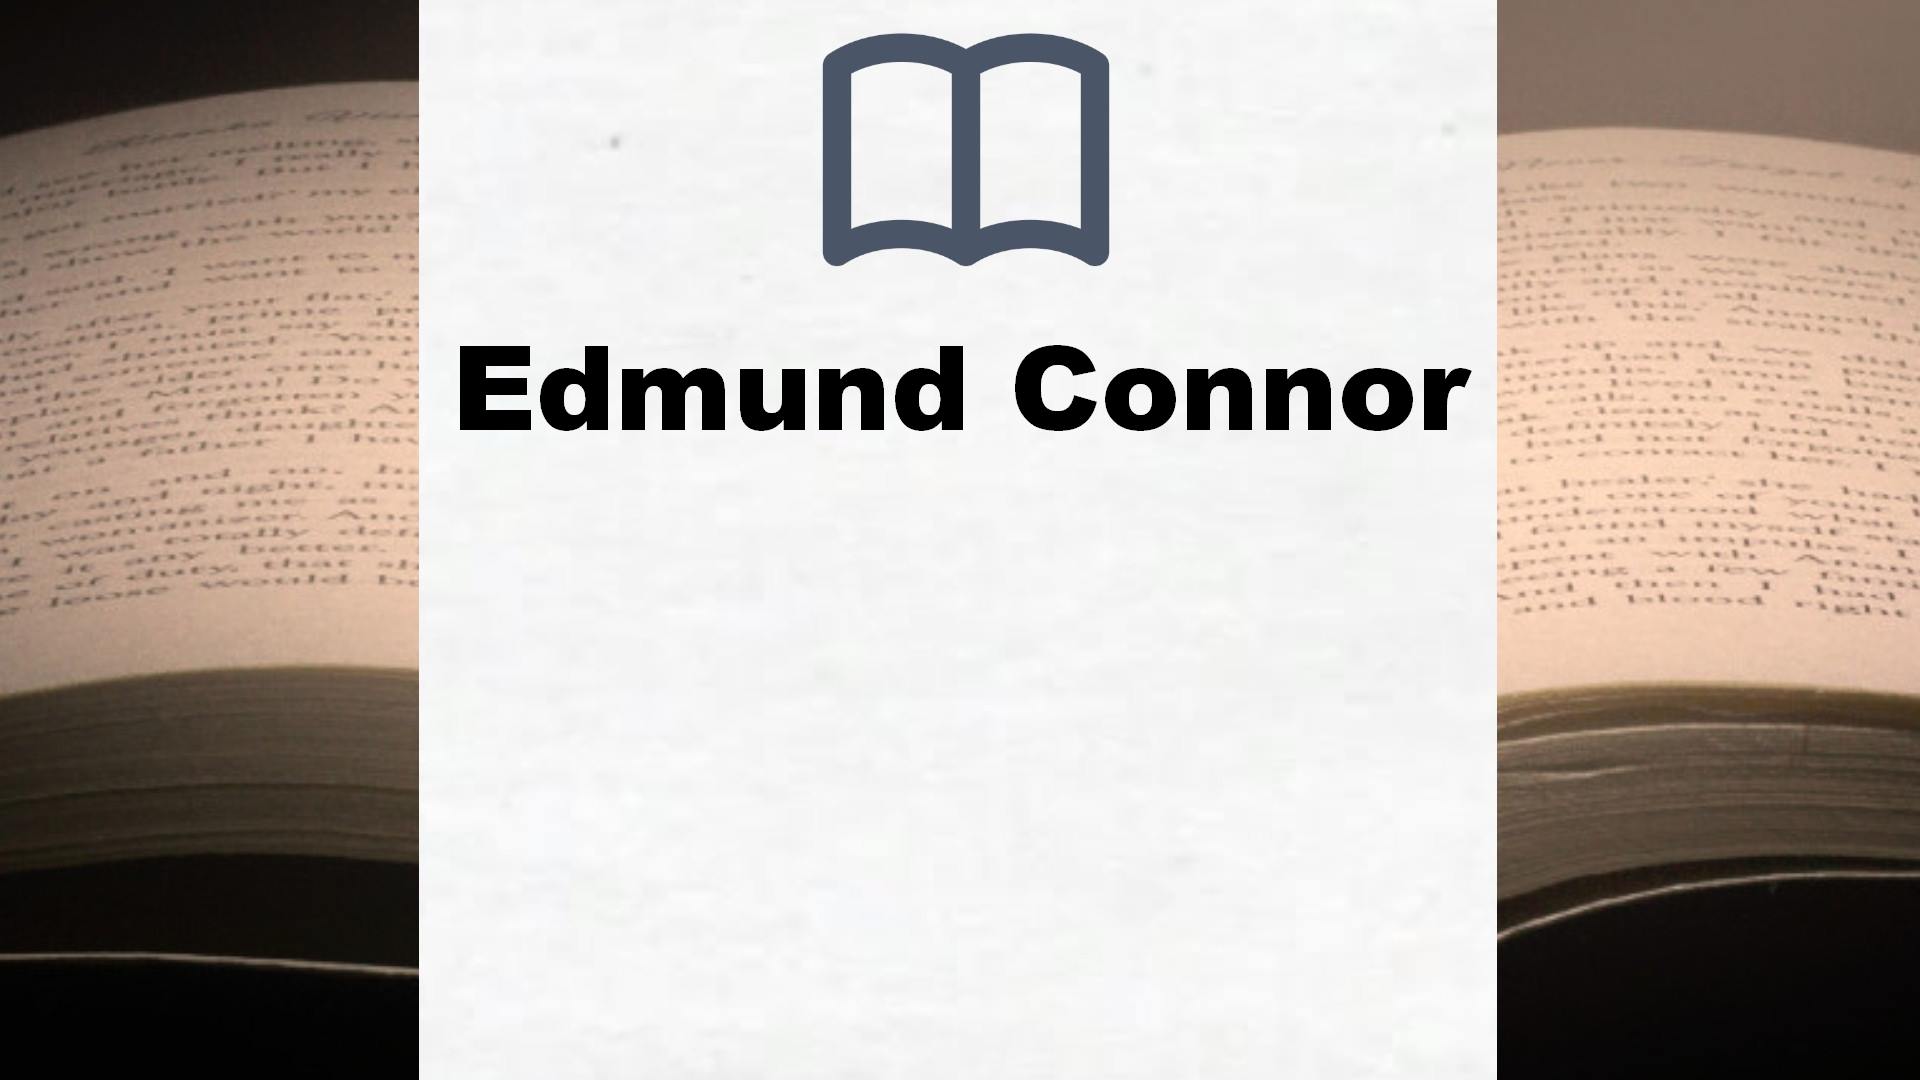 Bücher über Edmund Connor